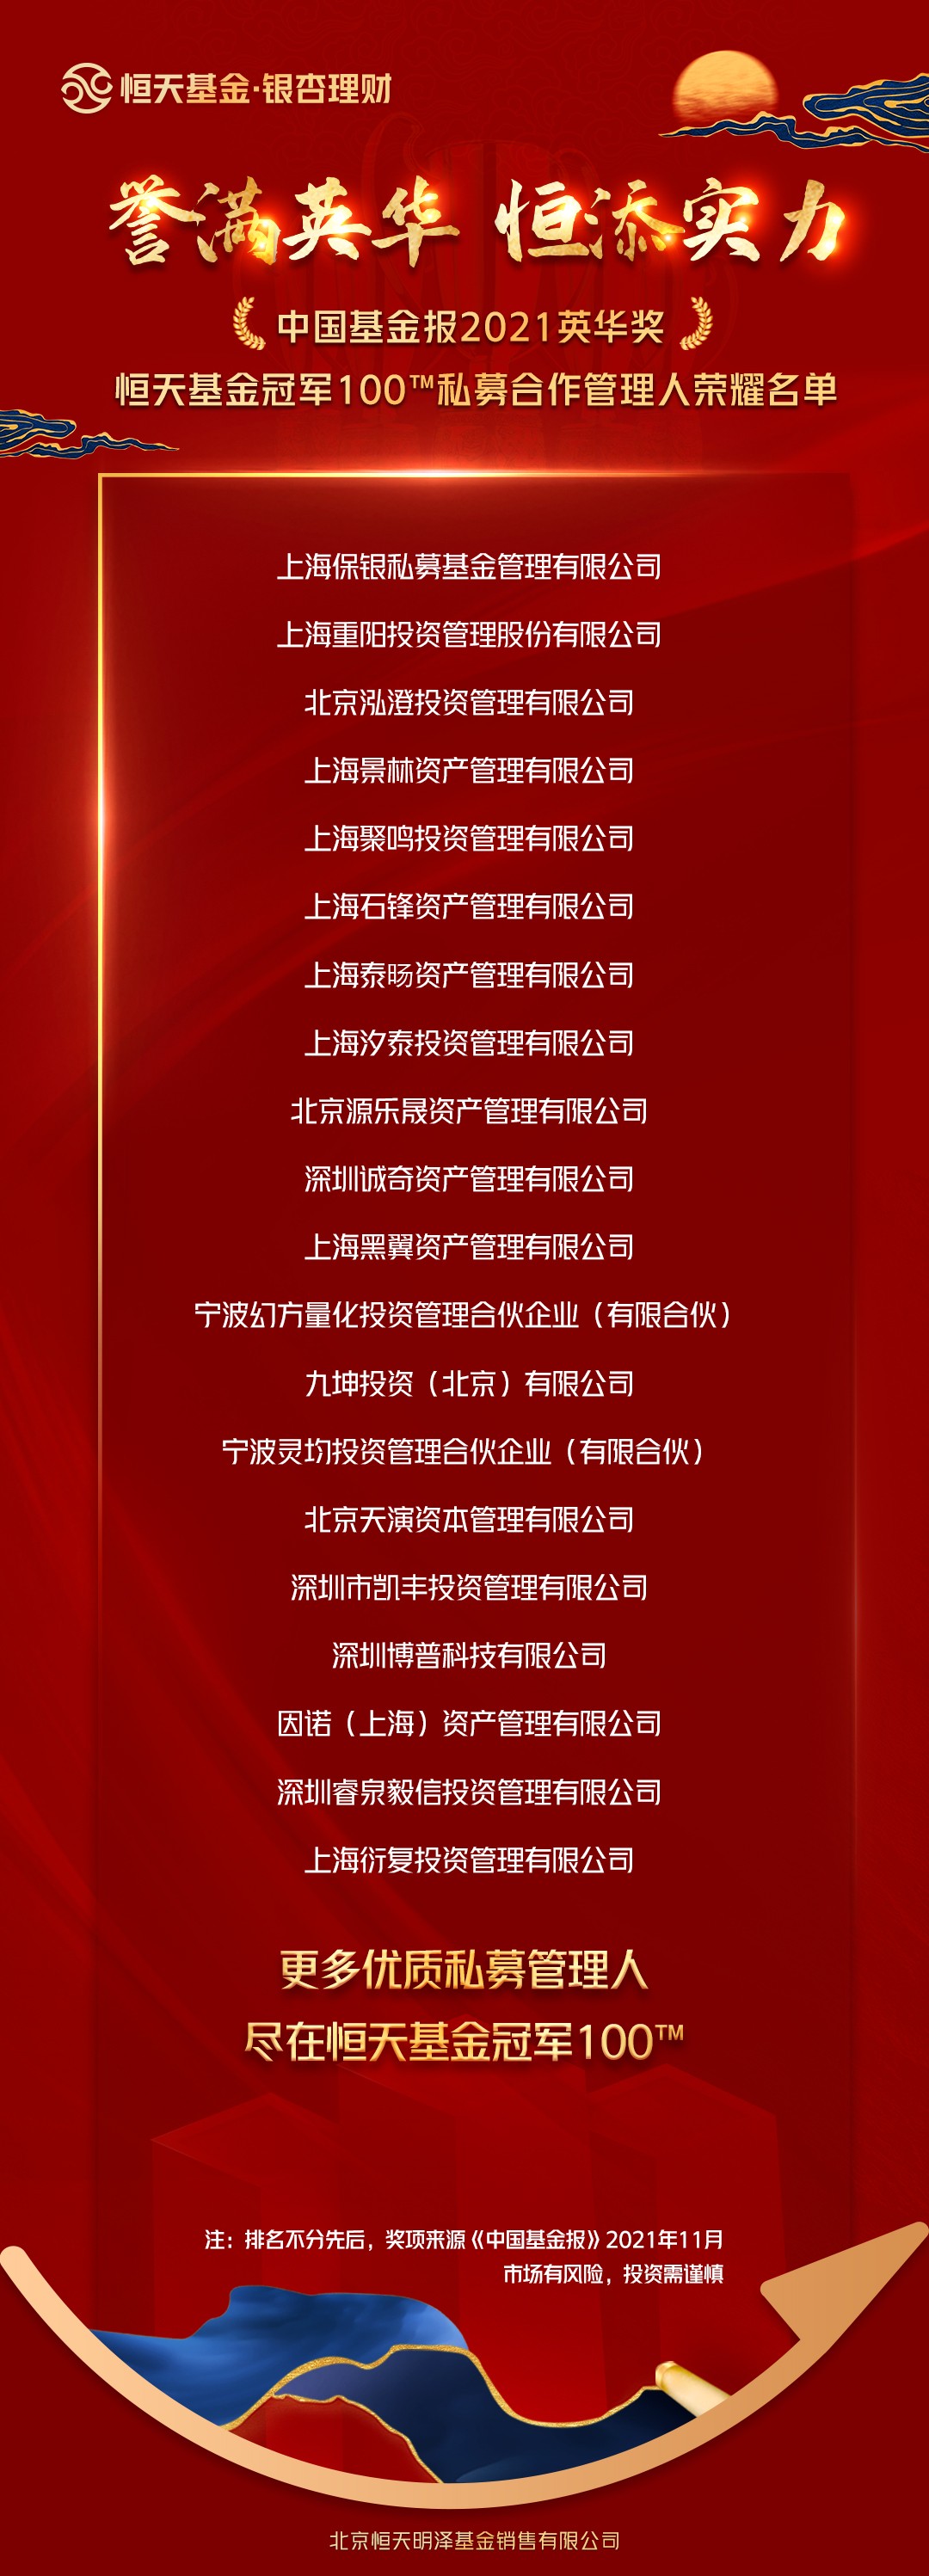  2021中国基金报英华奖揭晓，恒天基金冠军100囊括多位获奖榜单管理人”